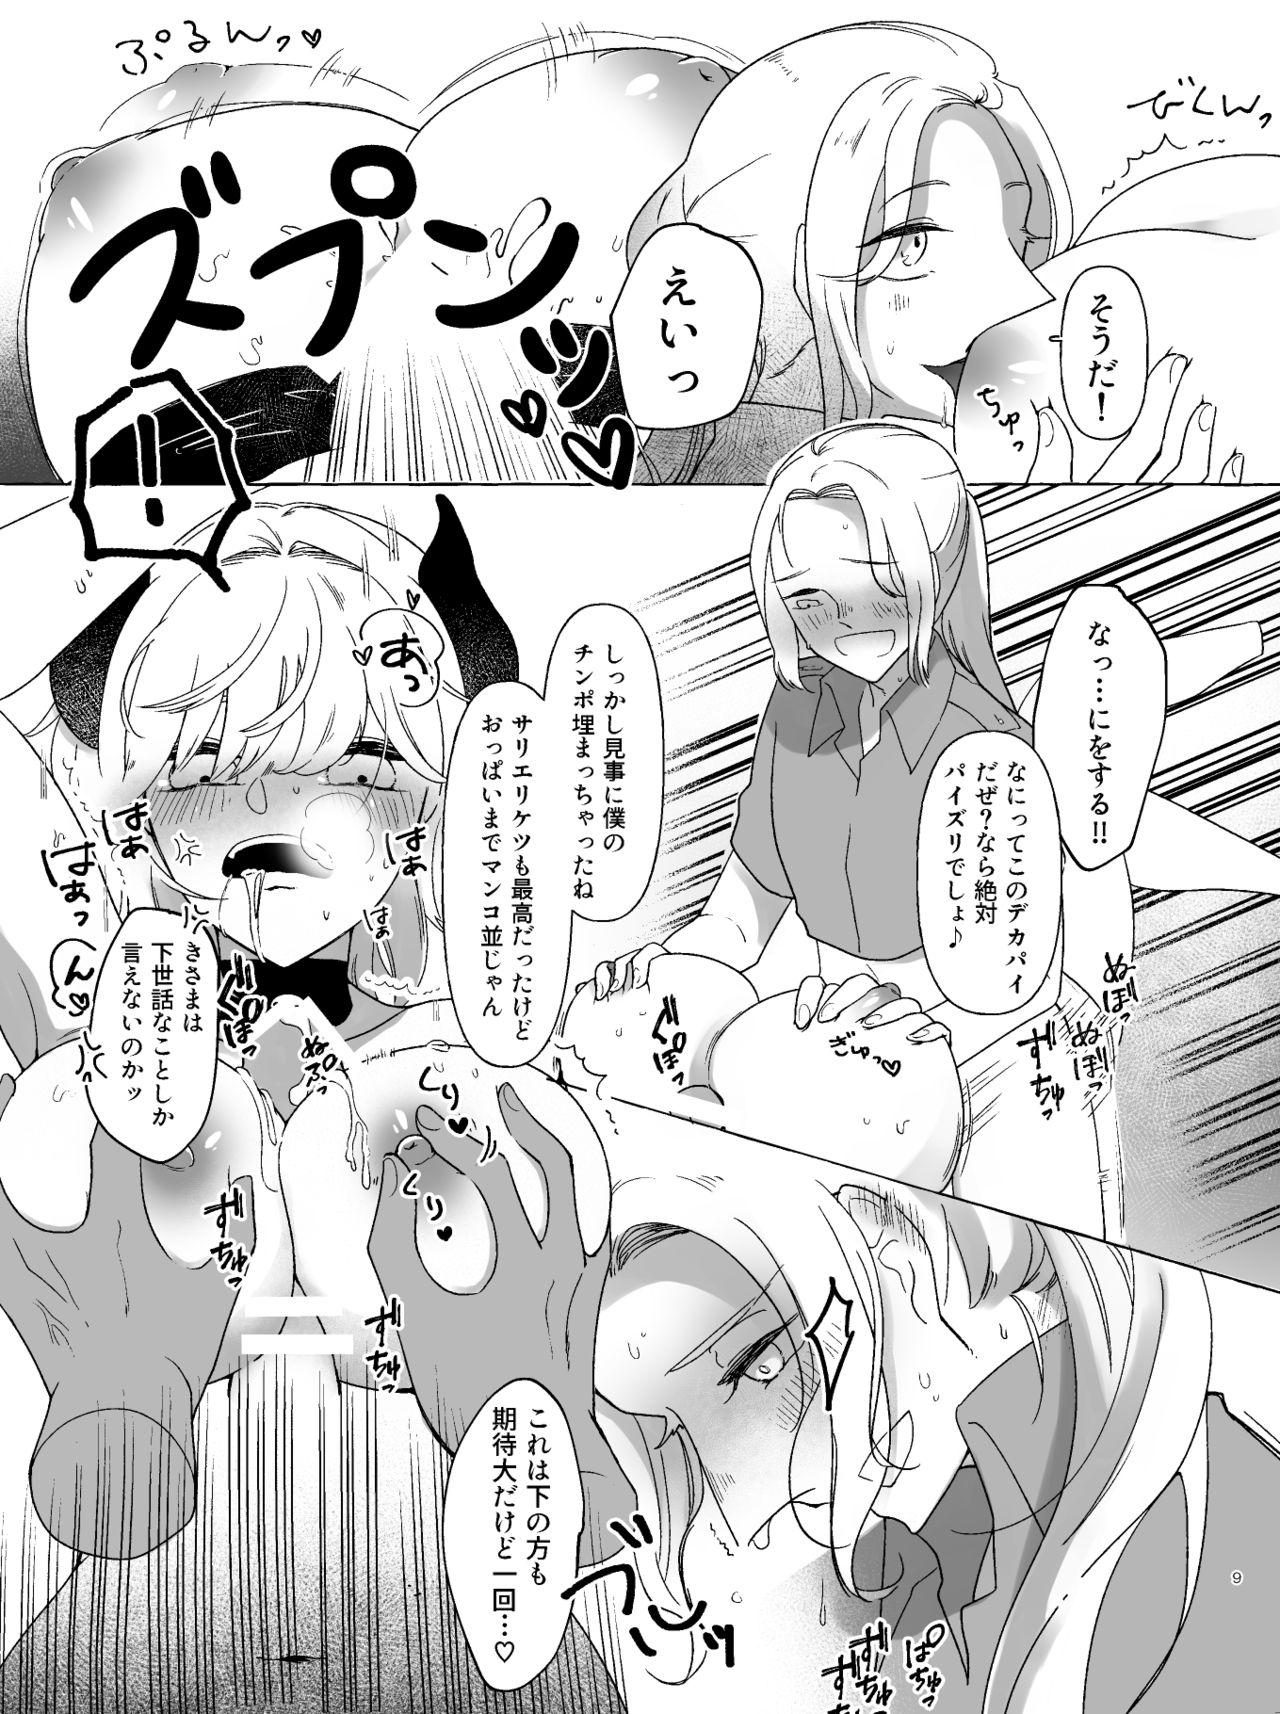 She アマサリ女体化すけべ漫画 - Fate grand order Tit - Page 8